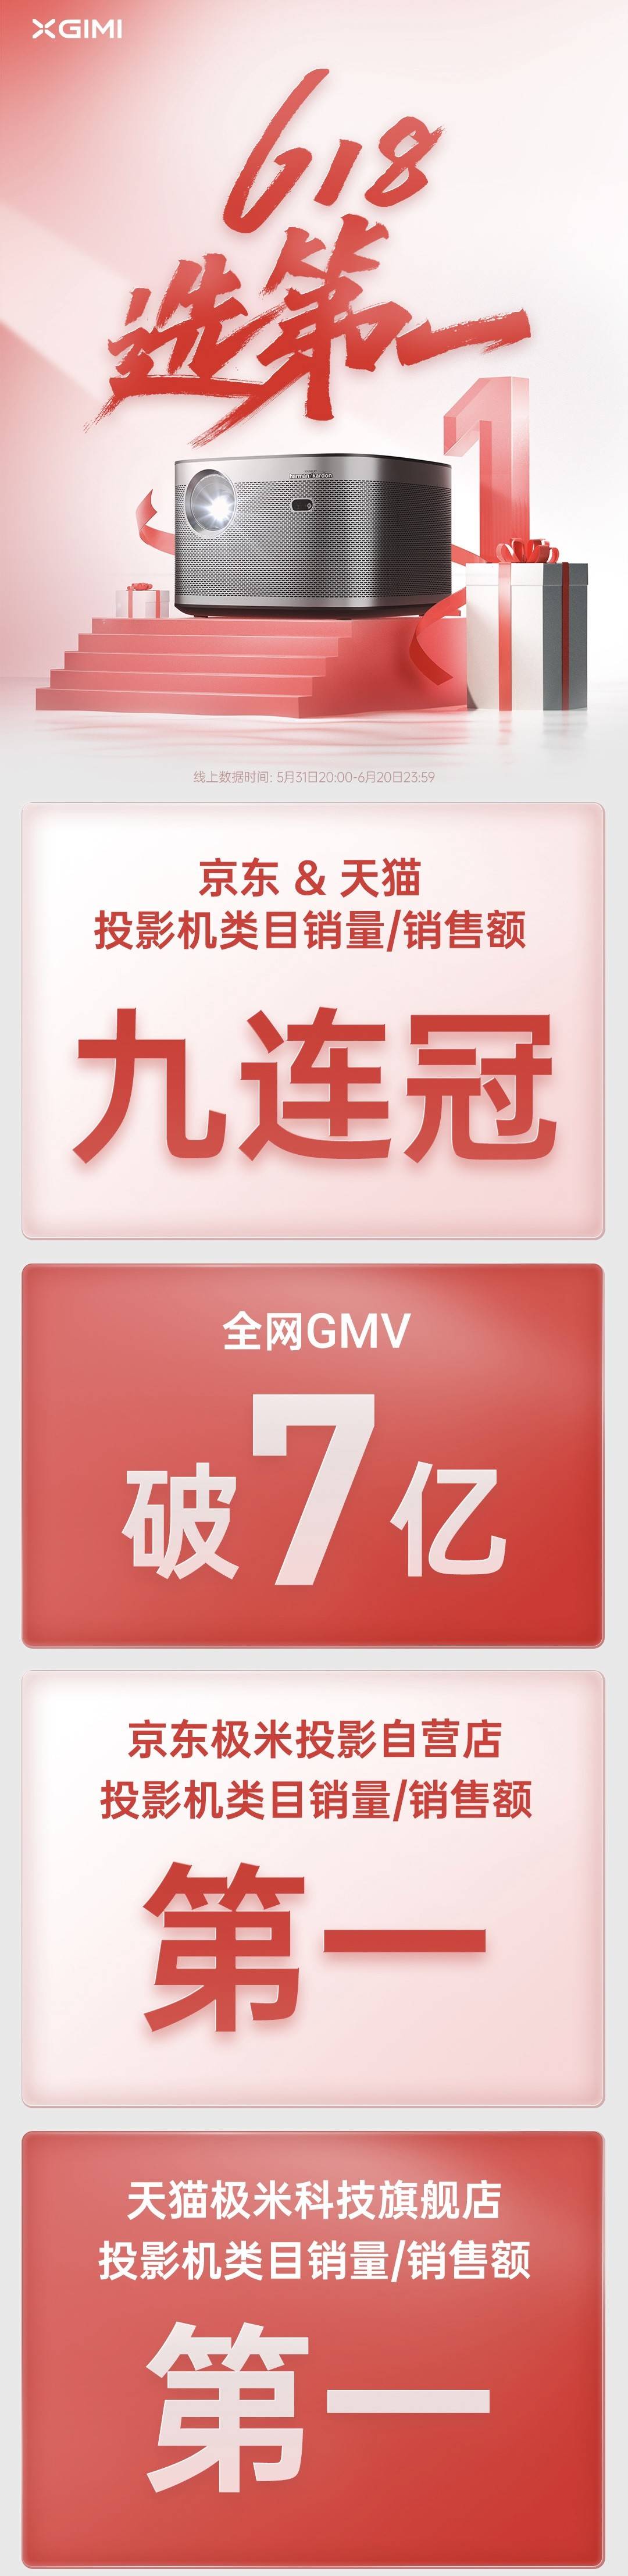 九连冠！极米投影618全网GMV破7亿